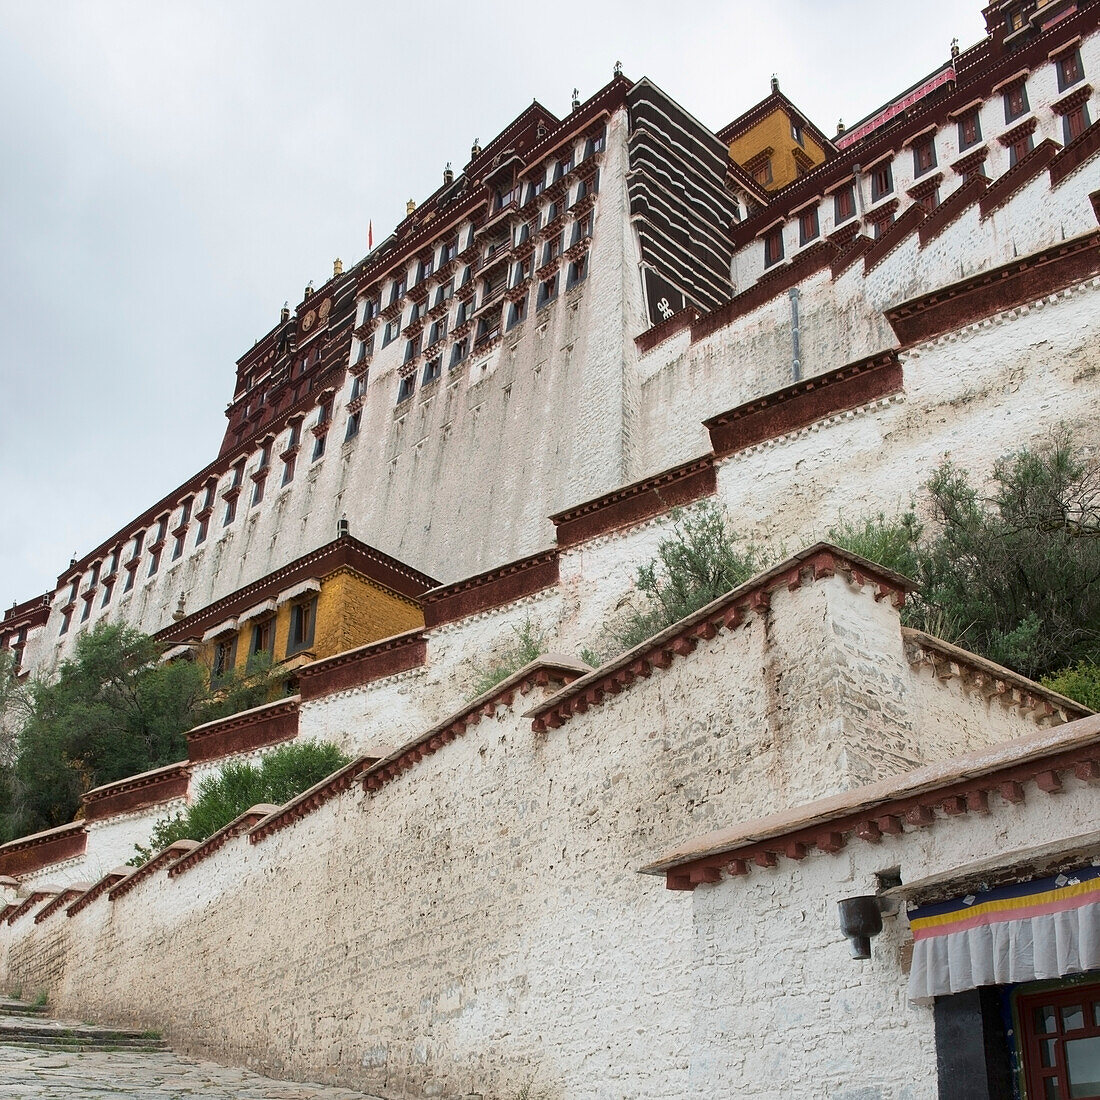 China, Xizang, Lhasa, Potala Palace, Detail